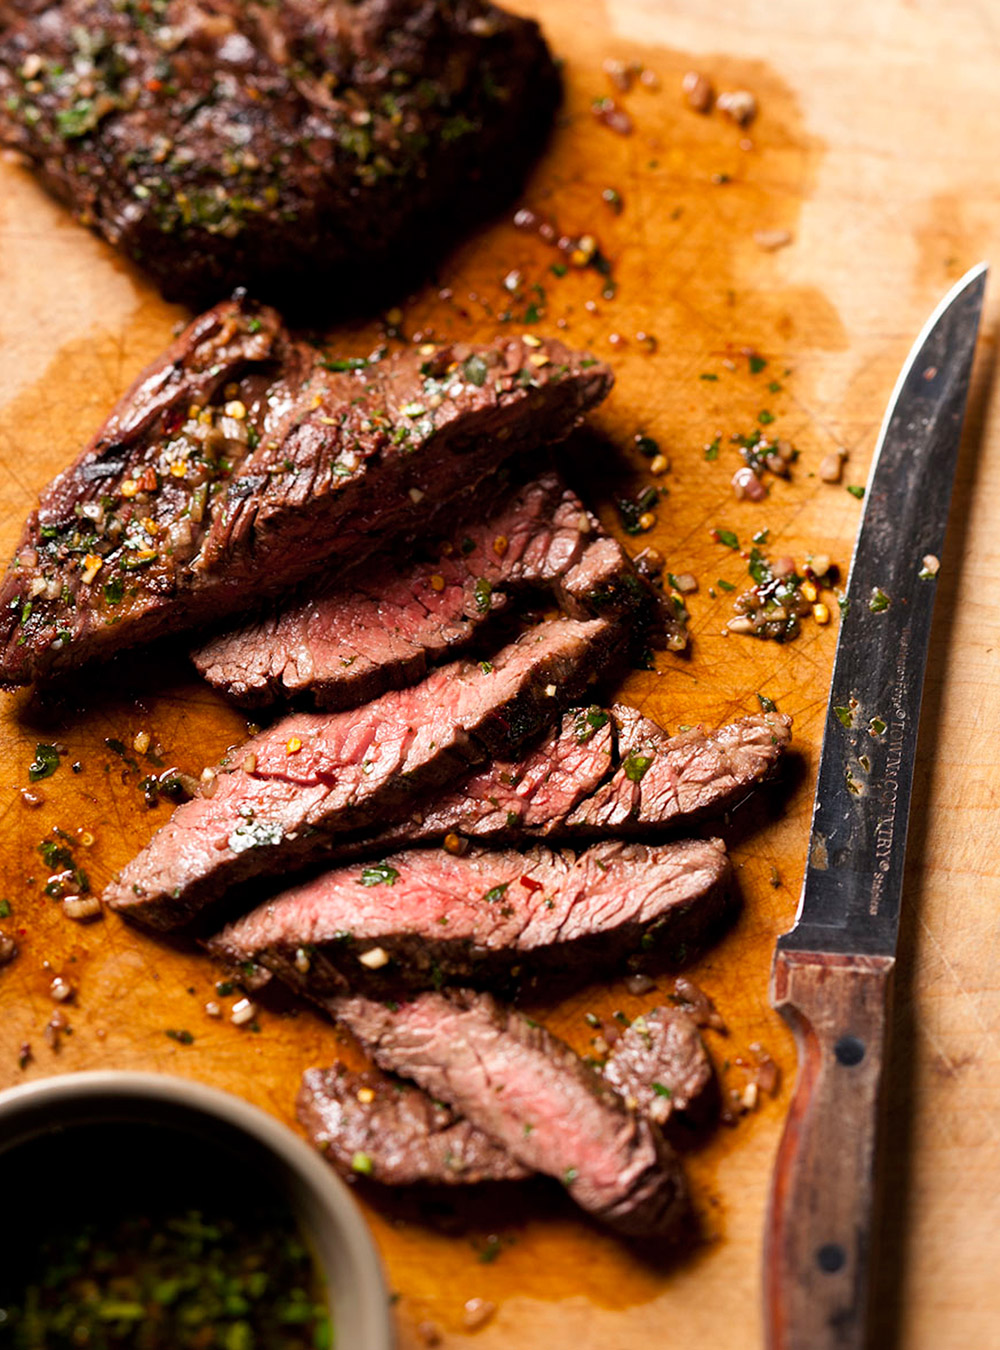 Recette de boeuf: tout sur les rôtis ou les steaks de boeuf | ricardo